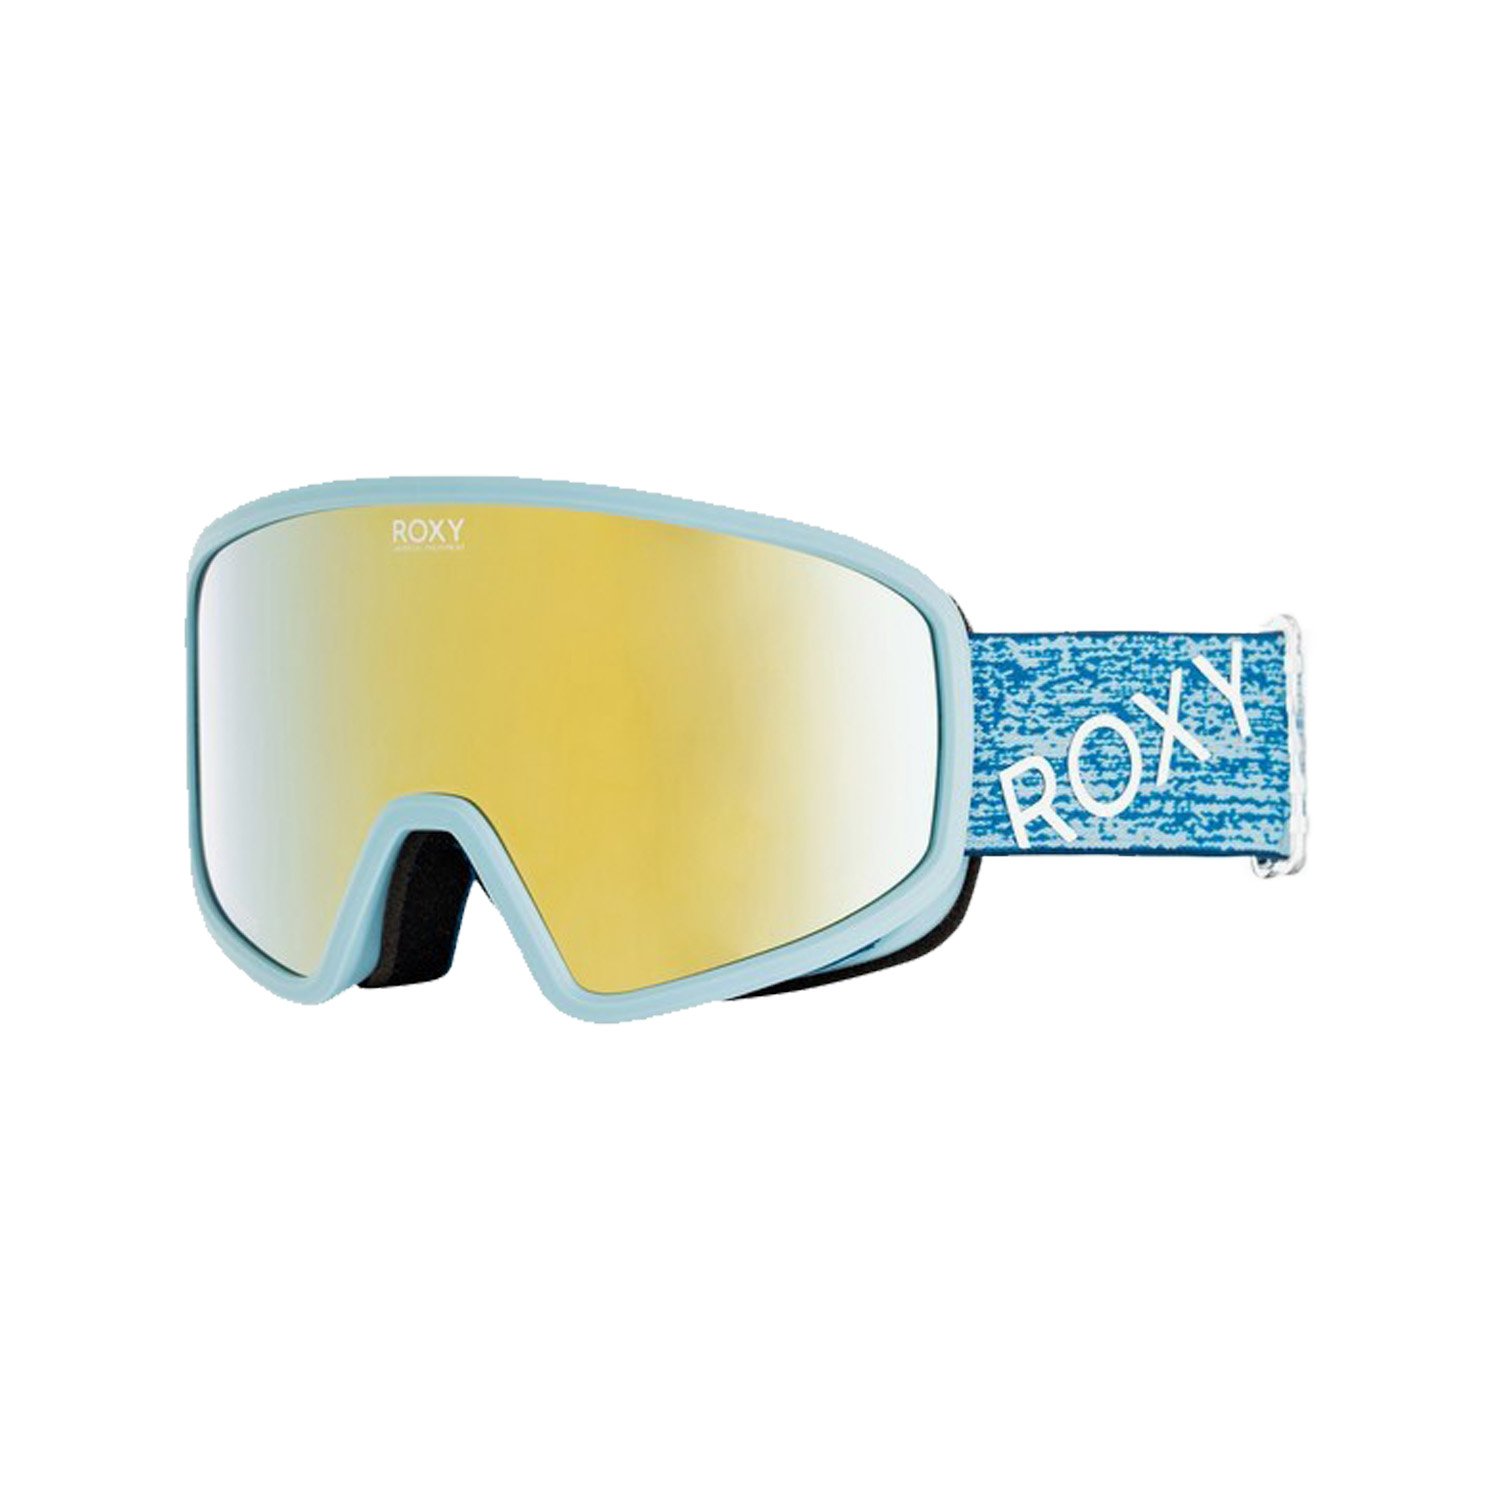 Roxy Feenity Kadın  Kayak / Snowboard Goggle - Renkli - 1